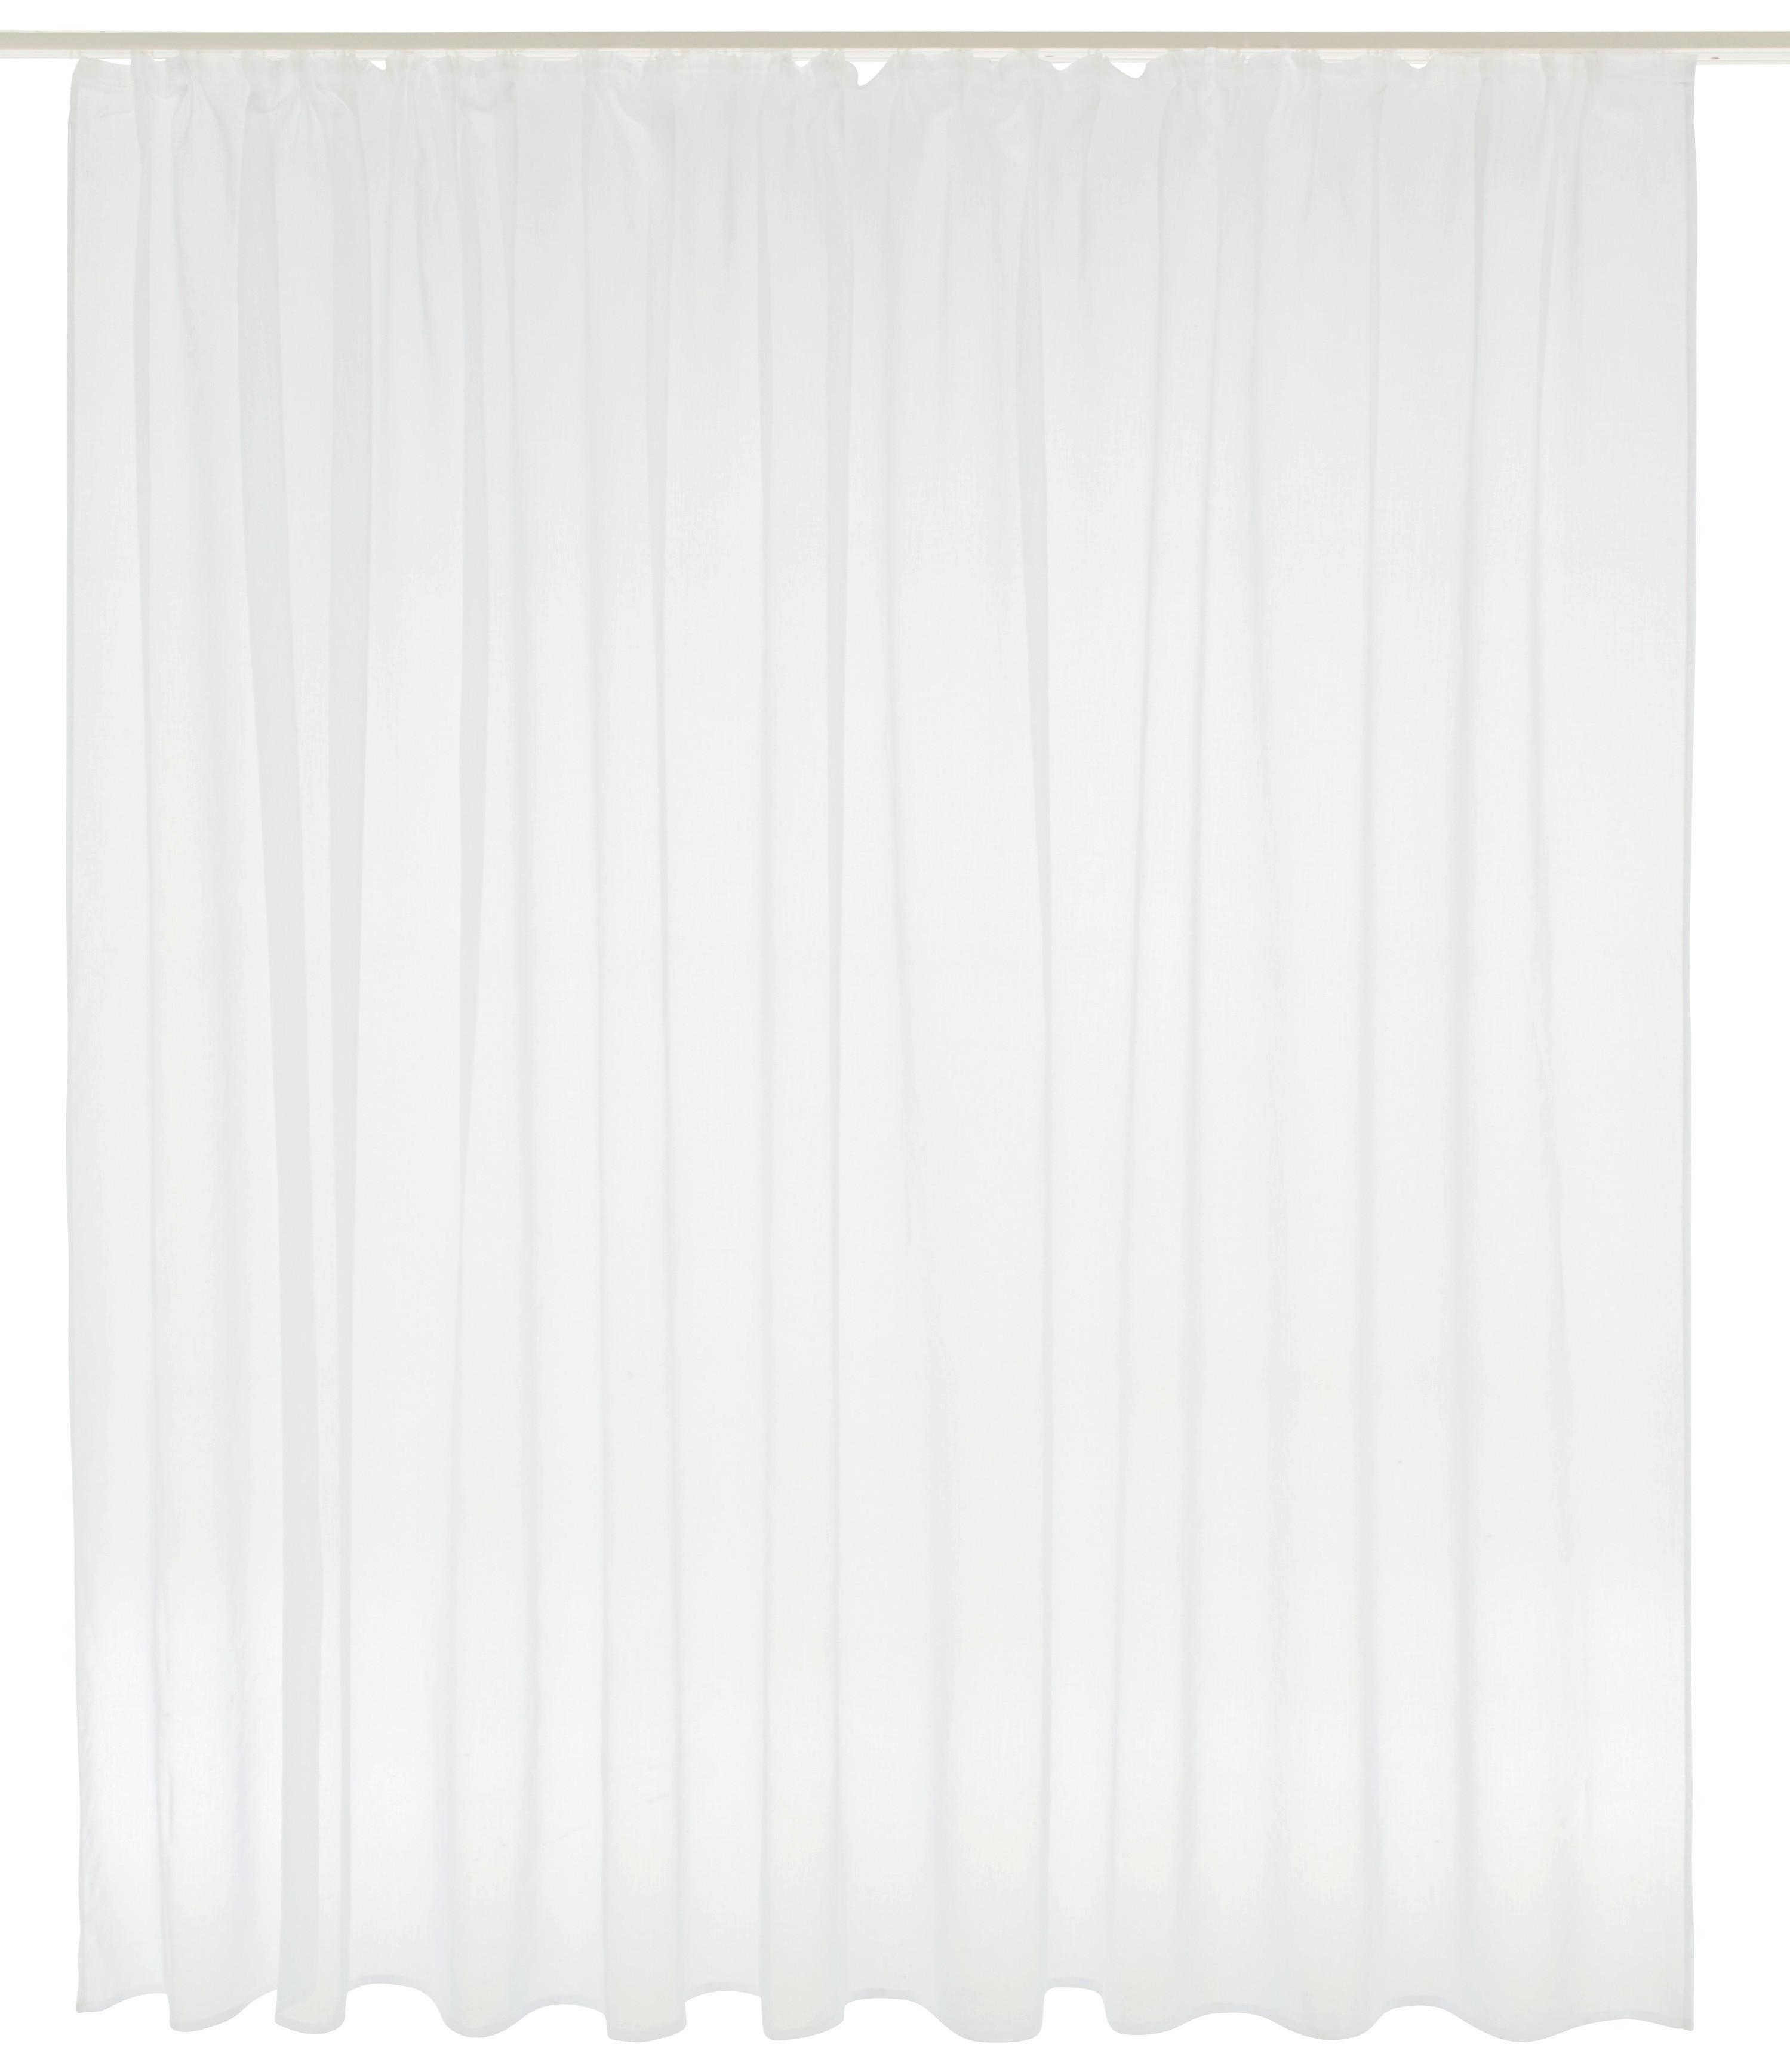 Kusová Záclona Tosca Store, 300/175cm - bílá, textil (300/175cm) - Modern Living